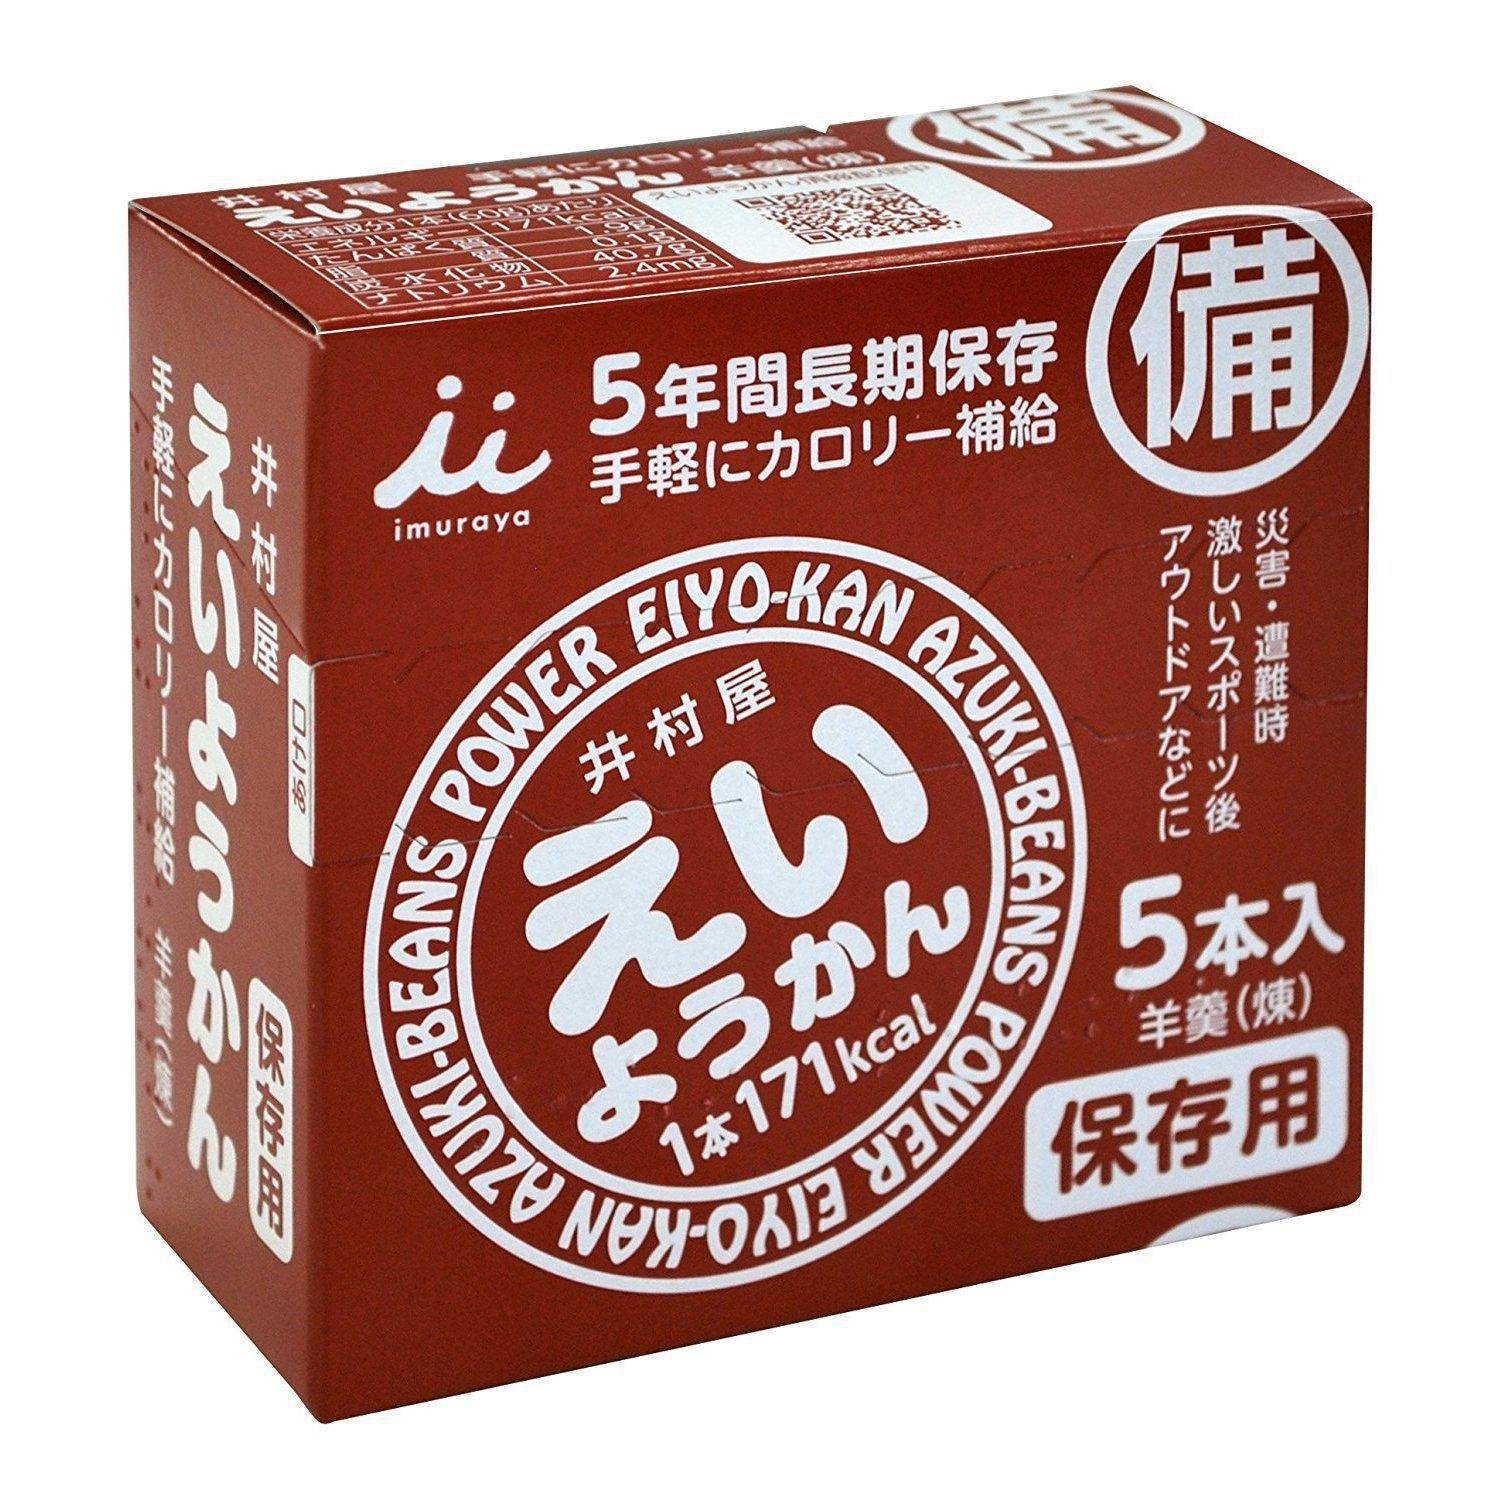 Imuraya Eiyokan Jellied Azuki Red Bean Paste Blocks 5 Bars